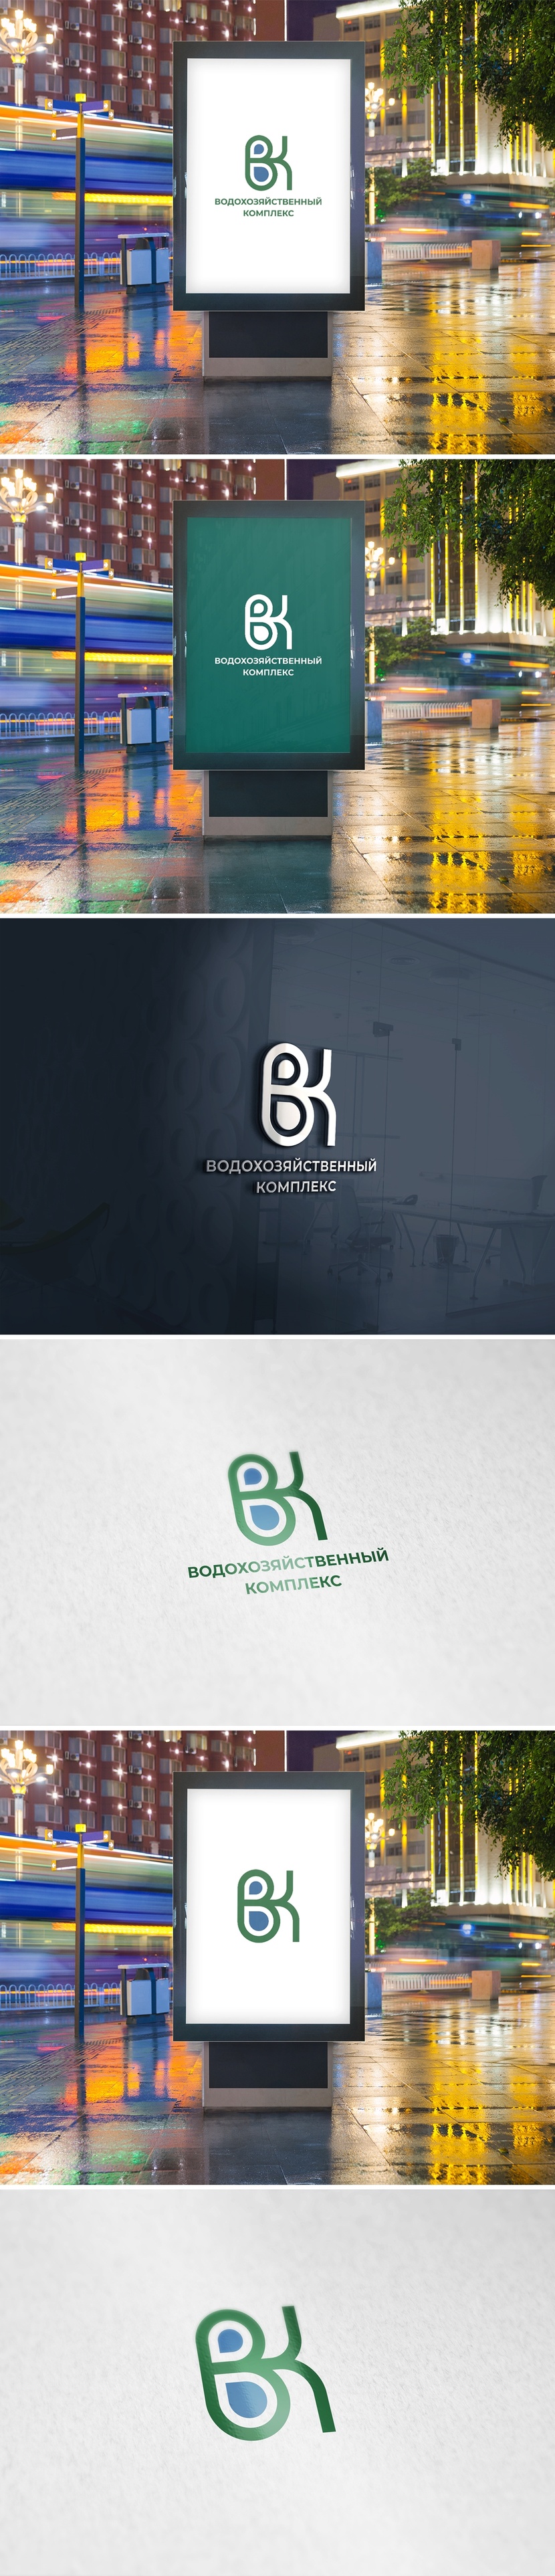 ВК - Разработка комплекта деловой документации (логотипа, фирменного знака)